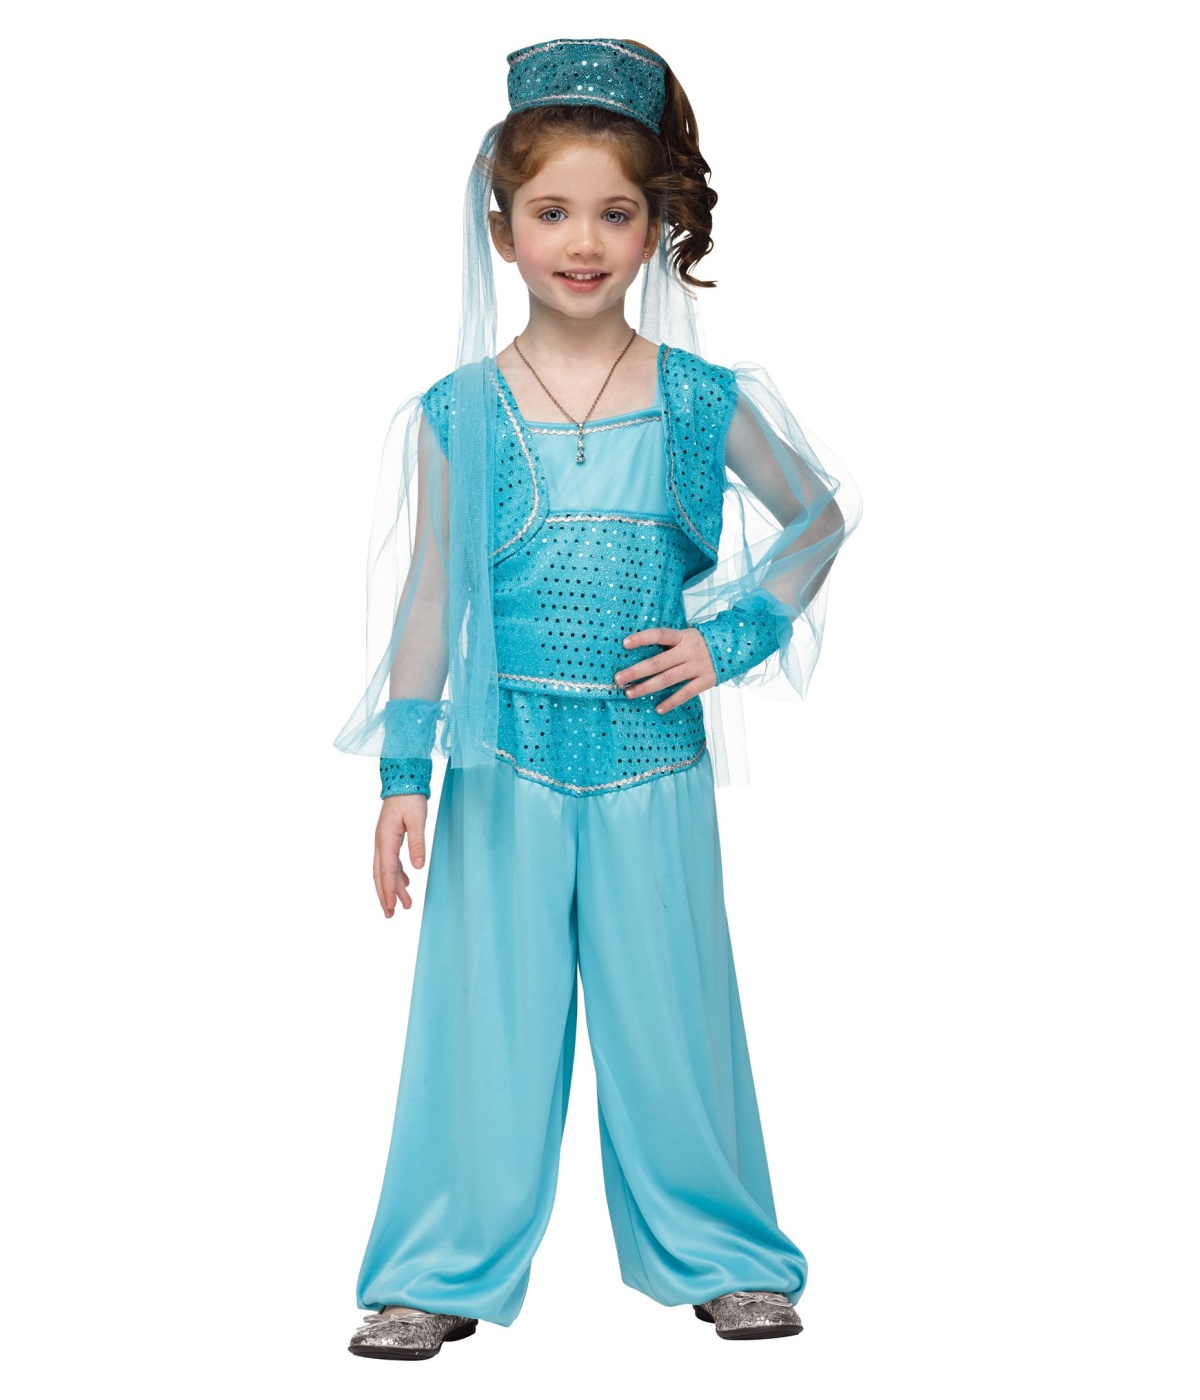  Girls Genie Baby Costume